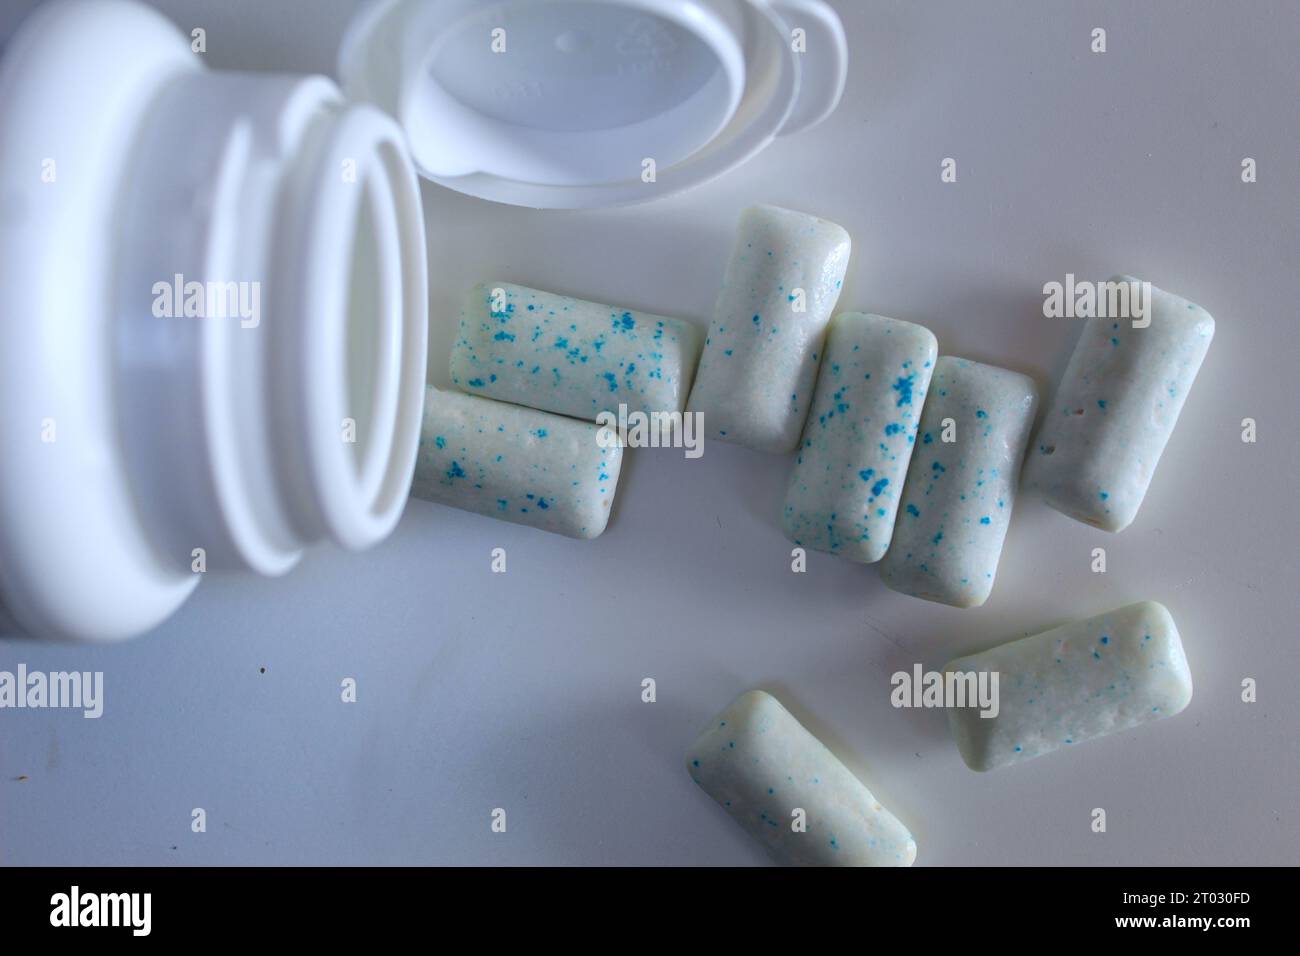 Photo de pastilles de chewing-gum à côté d'une bouteille de chewing-gum. Banque D'Images